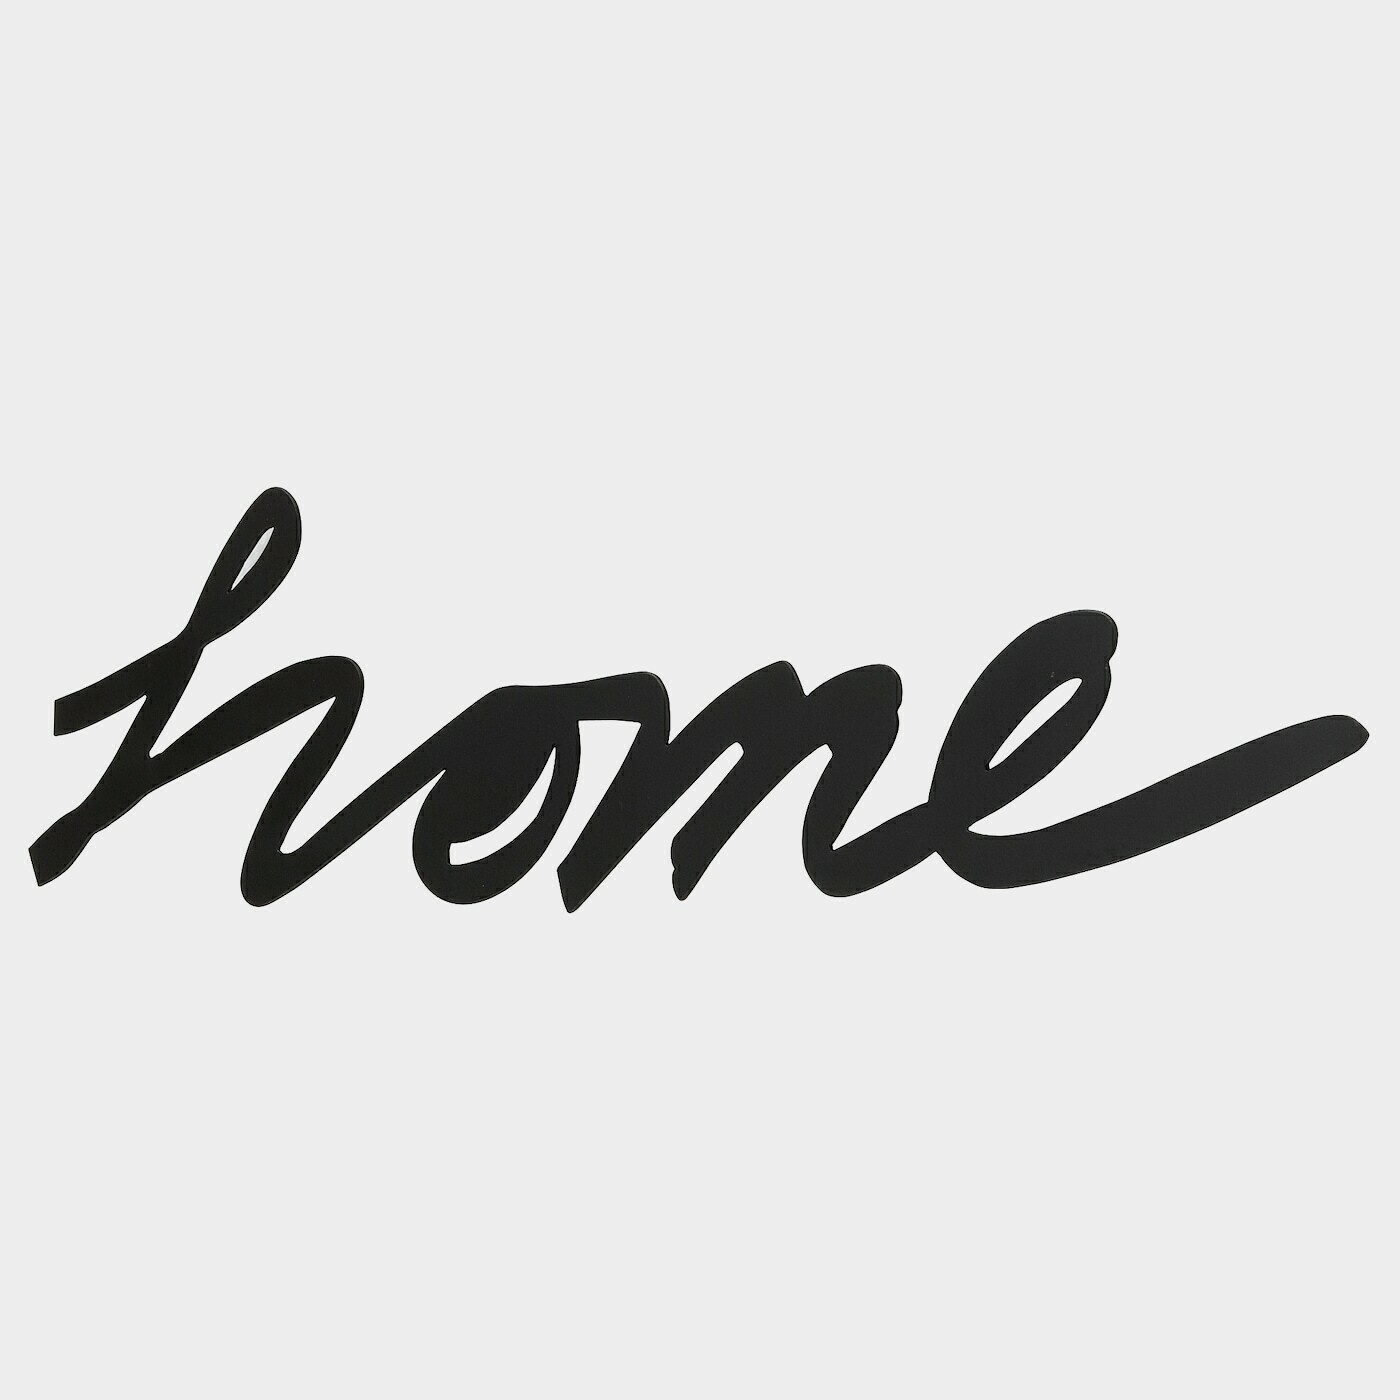 VÄTTLÖSA Wanddekoration  -  - Möbel Ideen für dein Zuhause von Home Trends. Möbel Trends von Social Media Influencer für dein Skandi Zuhause.